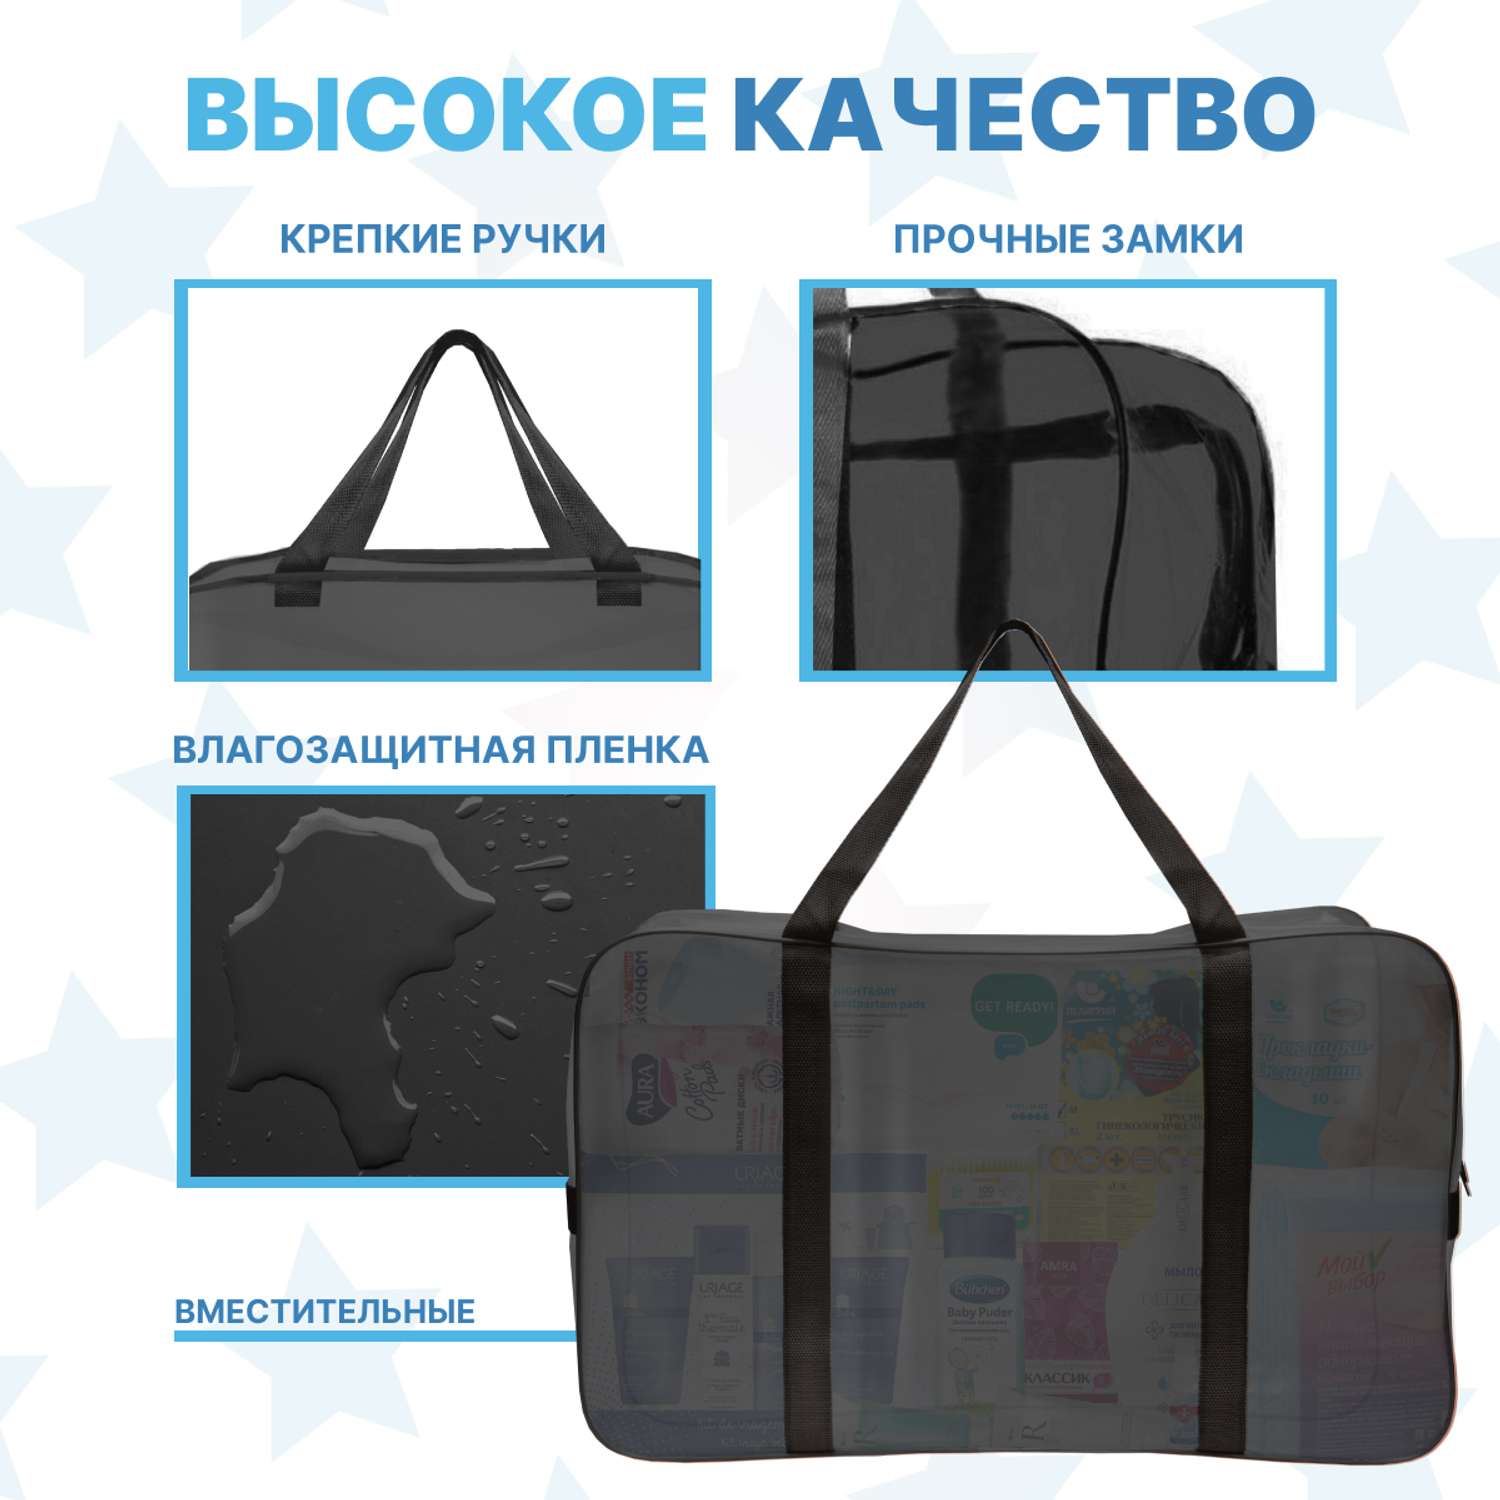 Набор для роддома ForBaby прозрачные сумки 3 шт - черный цвет - фото 4